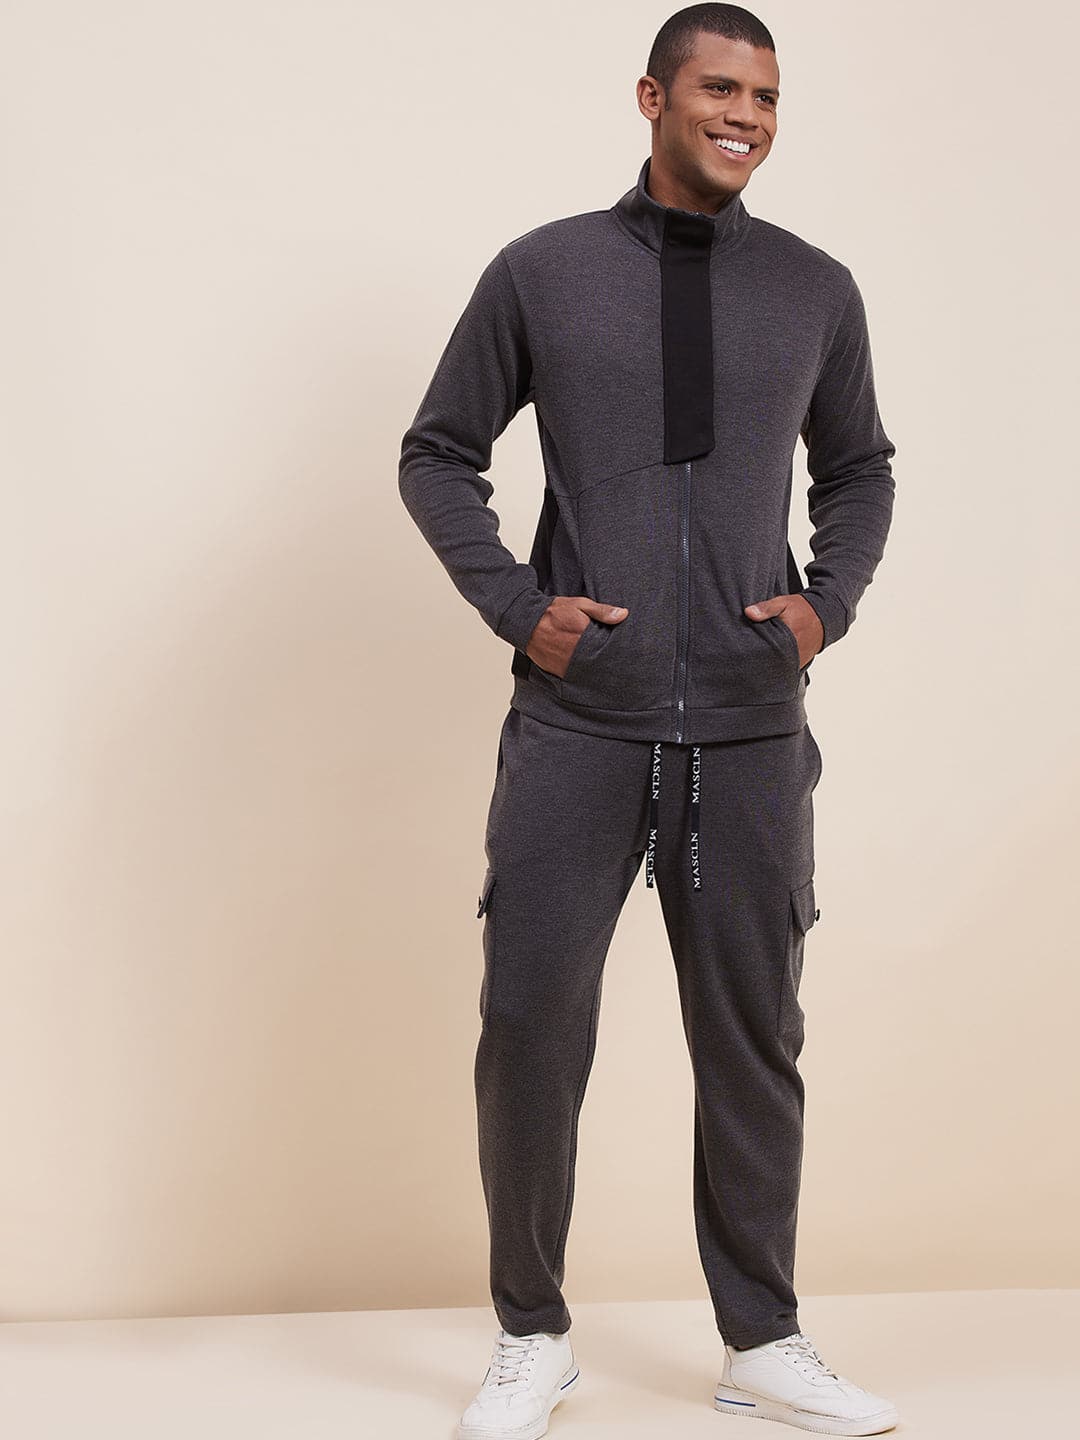 Men's Grey Melange High Neck Contrast Flap Jacket-Men's Jackets-SASSAFRAS